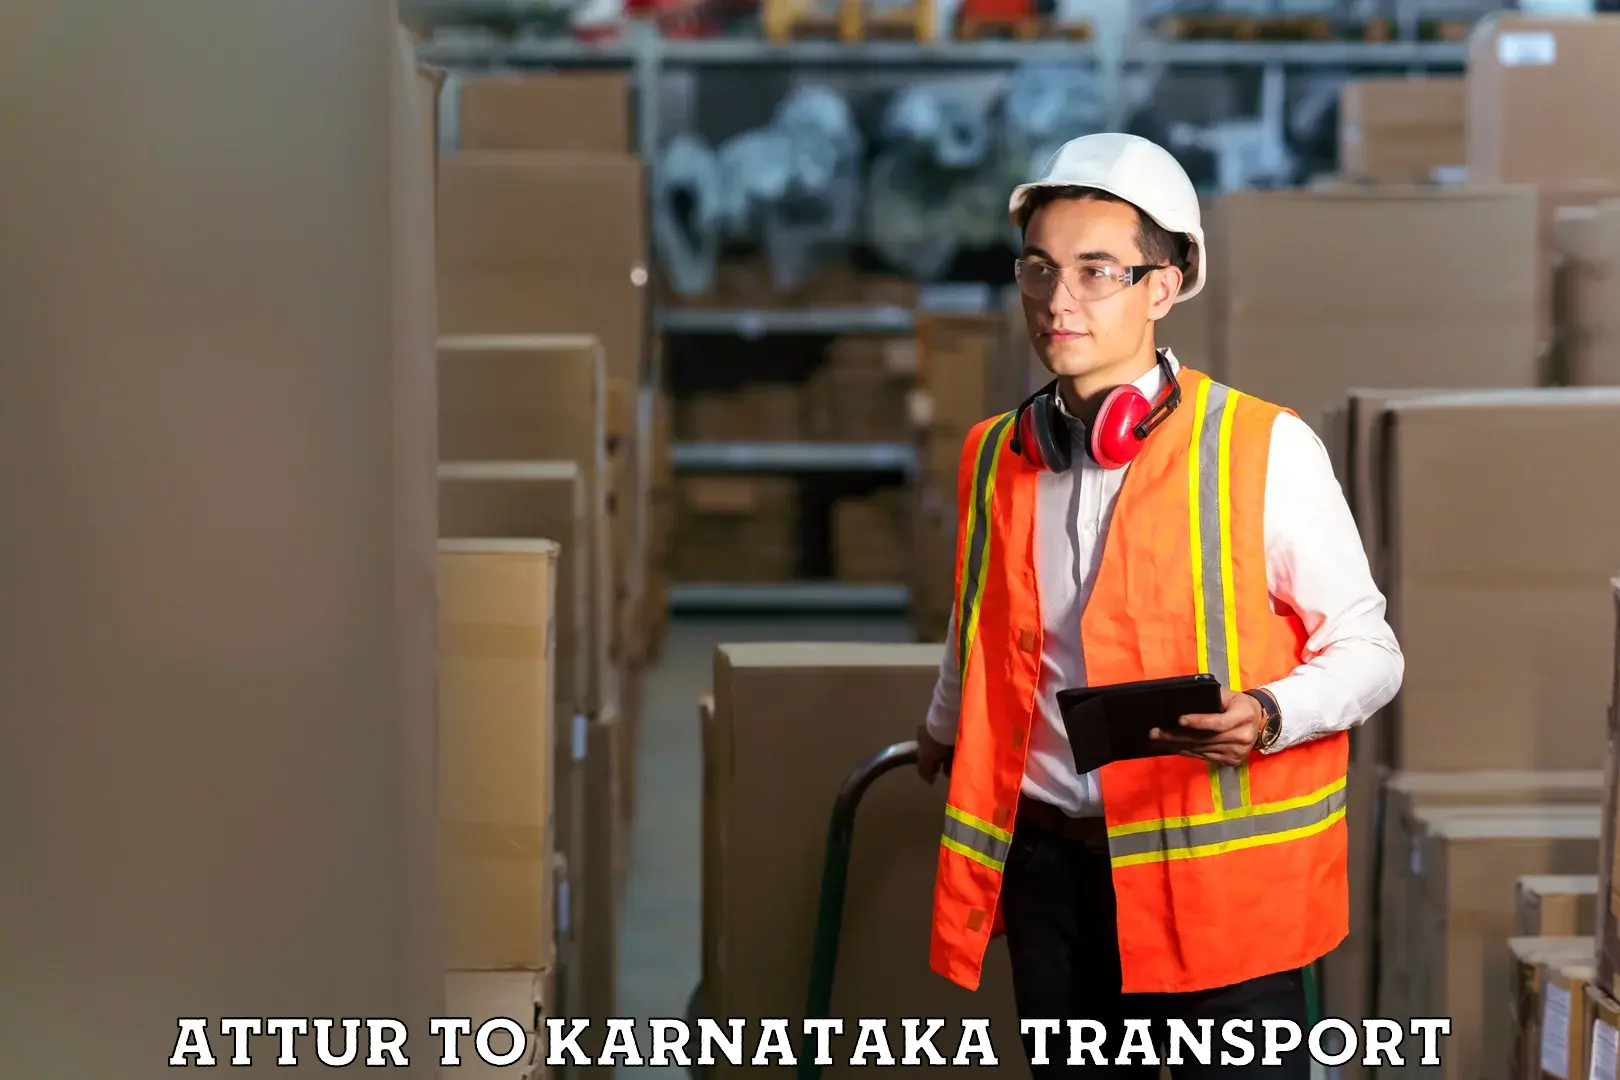 Commercial transport service Attur to Krishnarajanagara